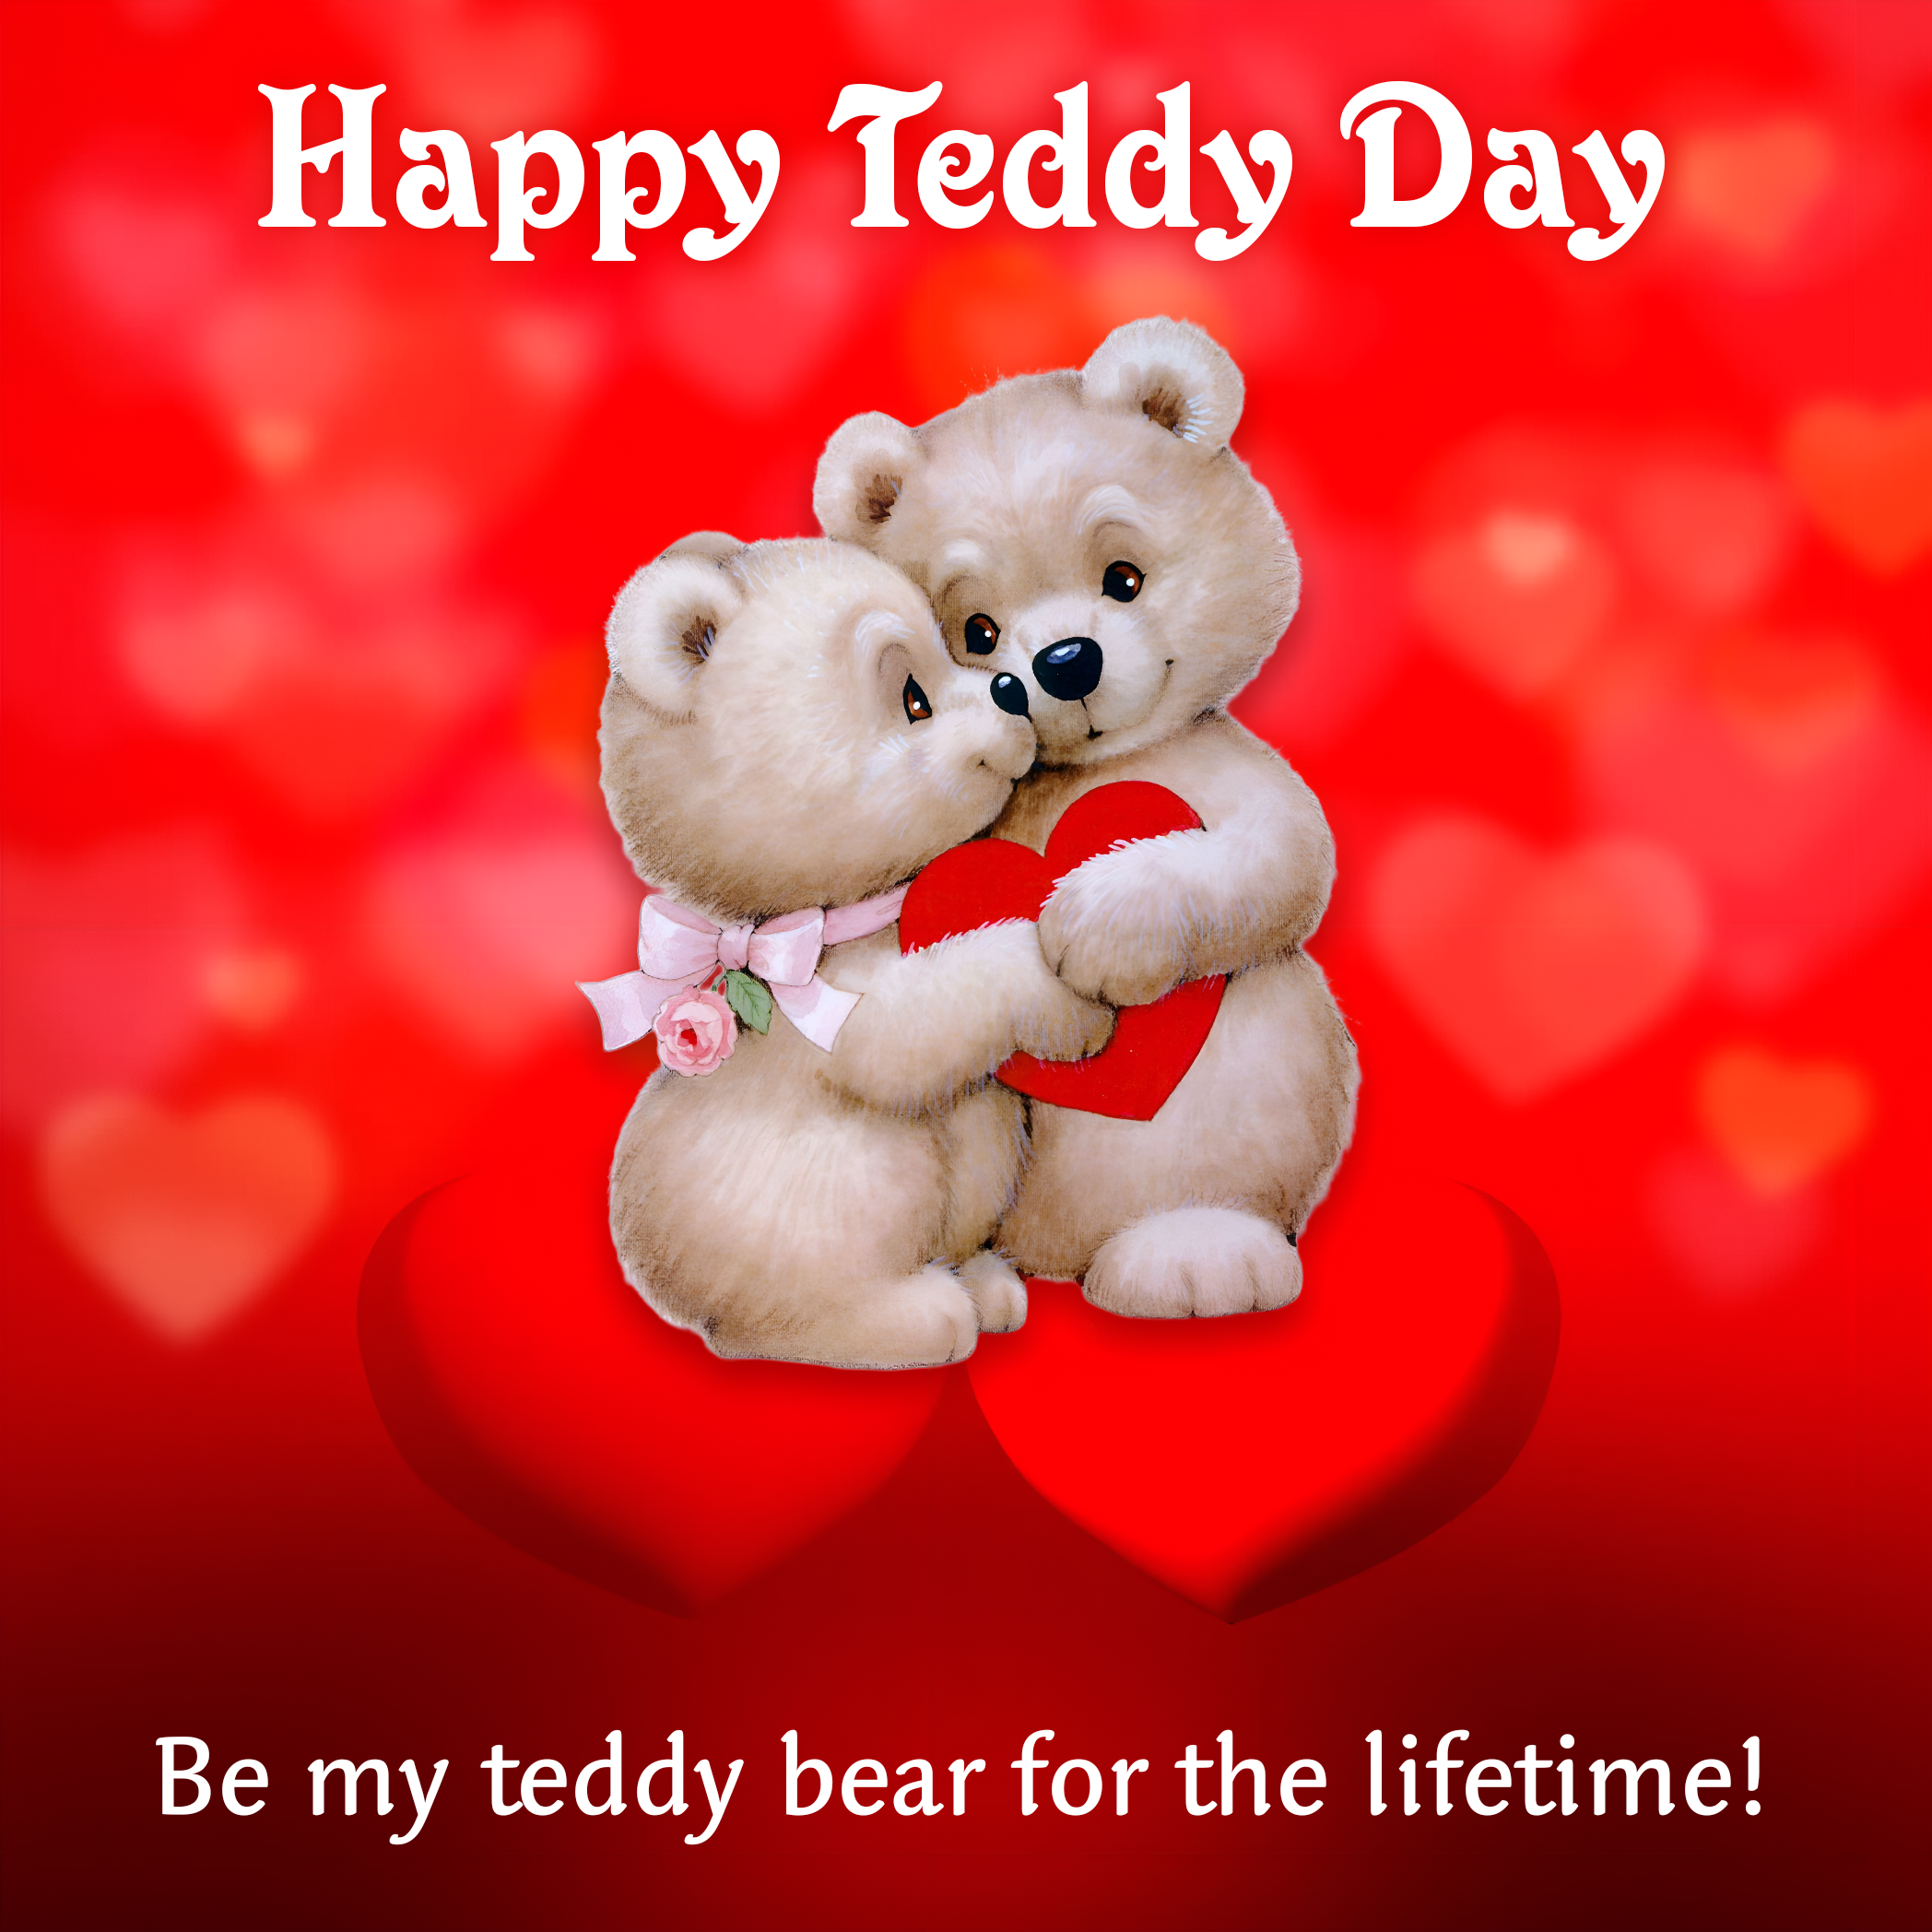 Be my teddy bear for the lifetime